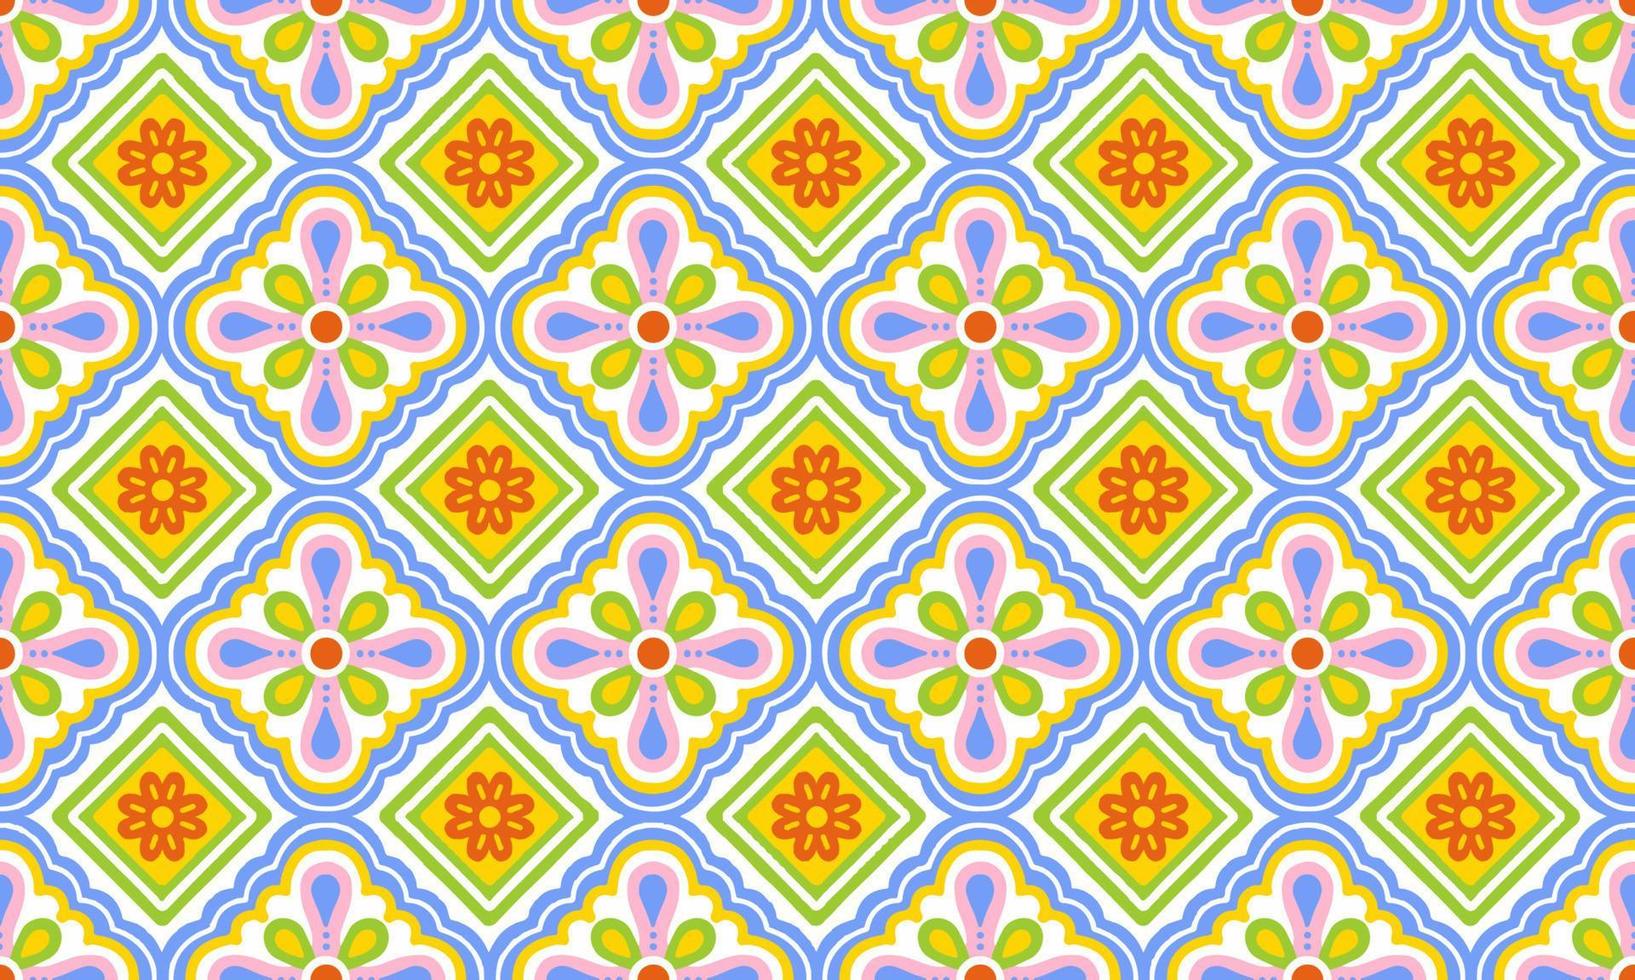 fundo étnico abstrato fofo verde pastel flor azul geométrico motivo tribal tribal árabe padrão nativo oriental design tradicional papel de parede do tapete roupas tecido embrulho impressão vetor popular batik